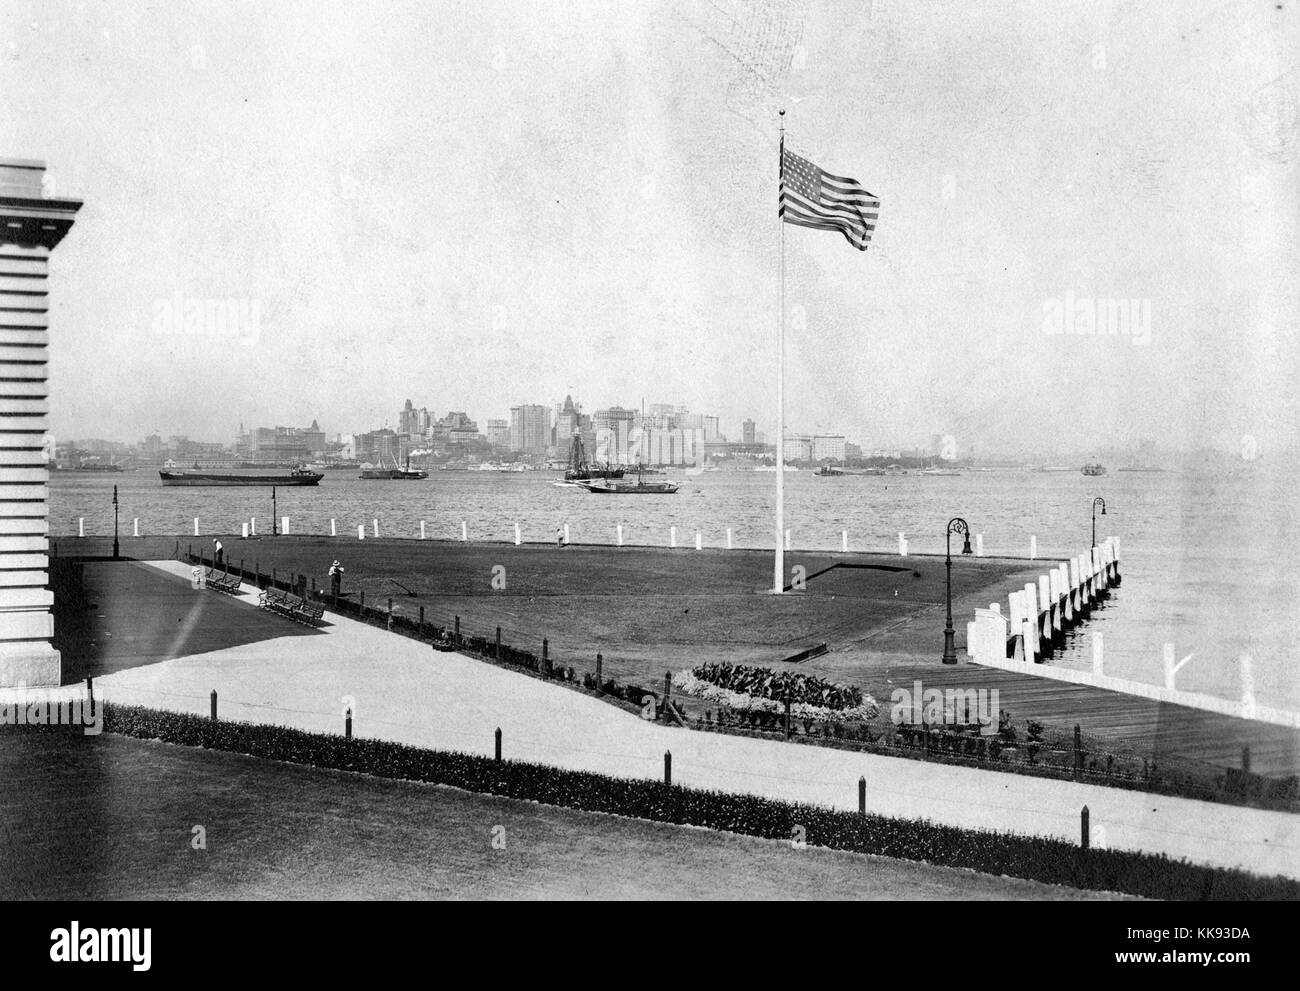 Ein Foto zeigt einen Teil des Rasens, dass die Einwanderung Prüfstation auf Ellis Island, der französischen Renaissance Revival Gebäude umgibt, mit roten Ziegeln und Kalkstein Verkleidung konstruiert wird, das Gebäude wurde erstmals am 17. Dezember 1900 eröffnete, war 1954 nach der Verarbeitung über 12 Millionen Einwanderer die Einreise in die Vereinigten Staaten geschlossen, eine Flagge ausserhalb des Gebäudes geflogen wird, einem breiten Gehweg aus dem Gras durch niedrige Zäune und Sträuchern getrennt ist, New York City im Hintergrund über die Upper New York Bay, 1907 gesehen werden kann. Von der New York Public Library. Stockfoto